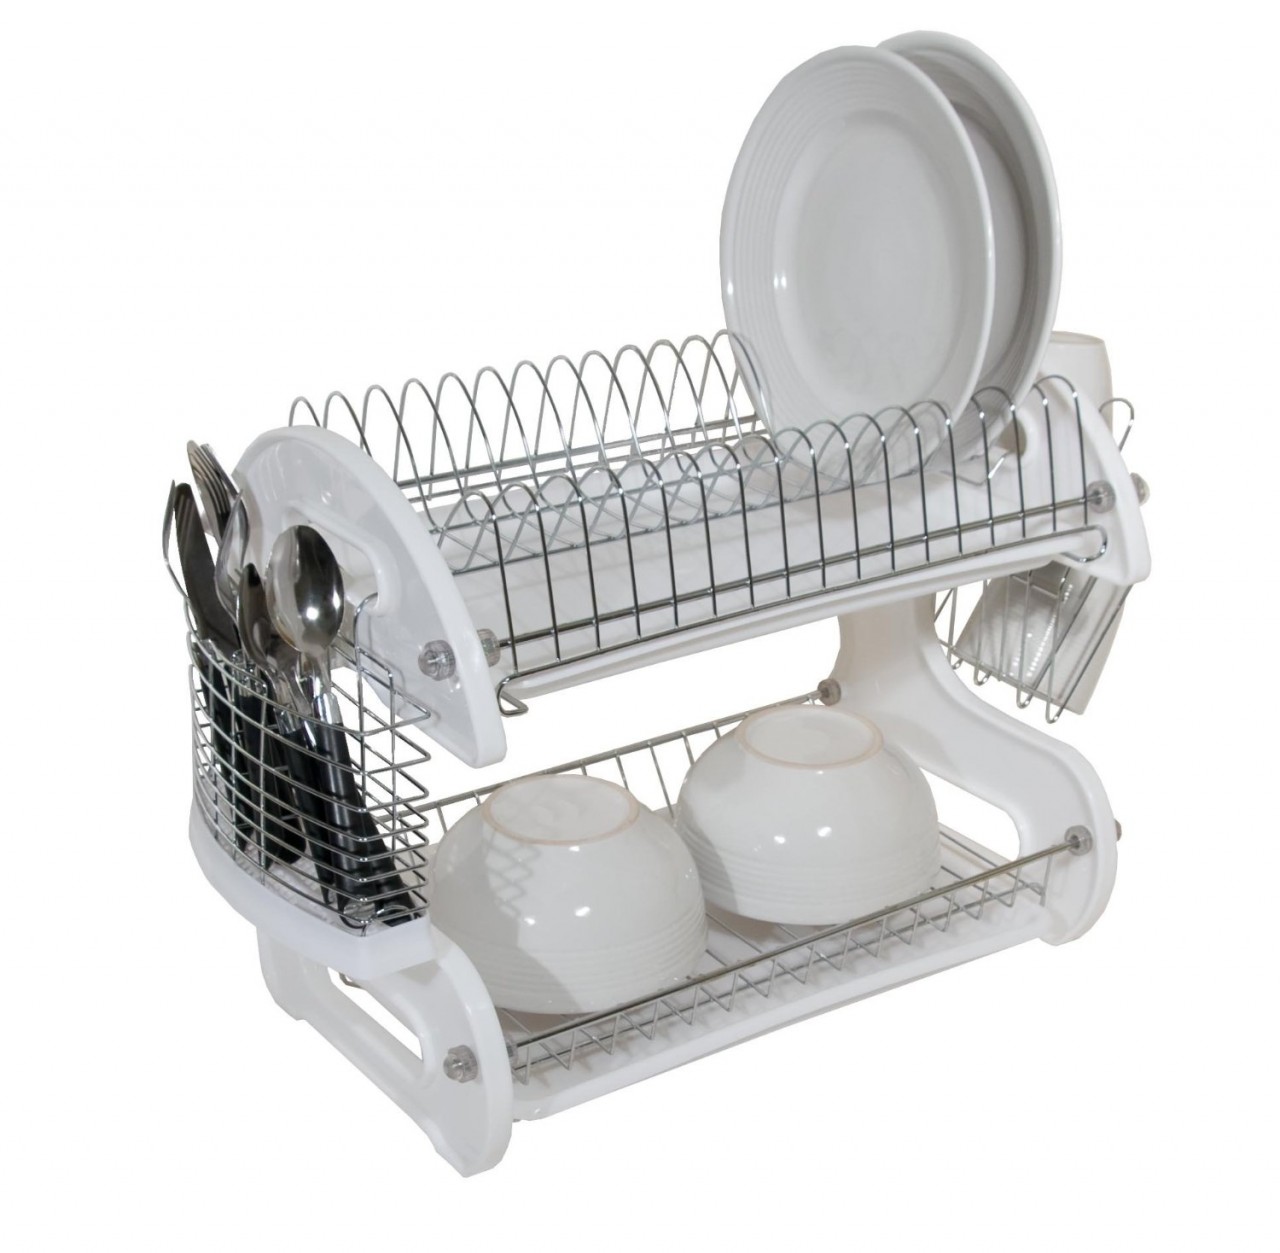 Essentials White Plastic Dish Drainer - 11.25'' x 13.75'' x 4.25'' 